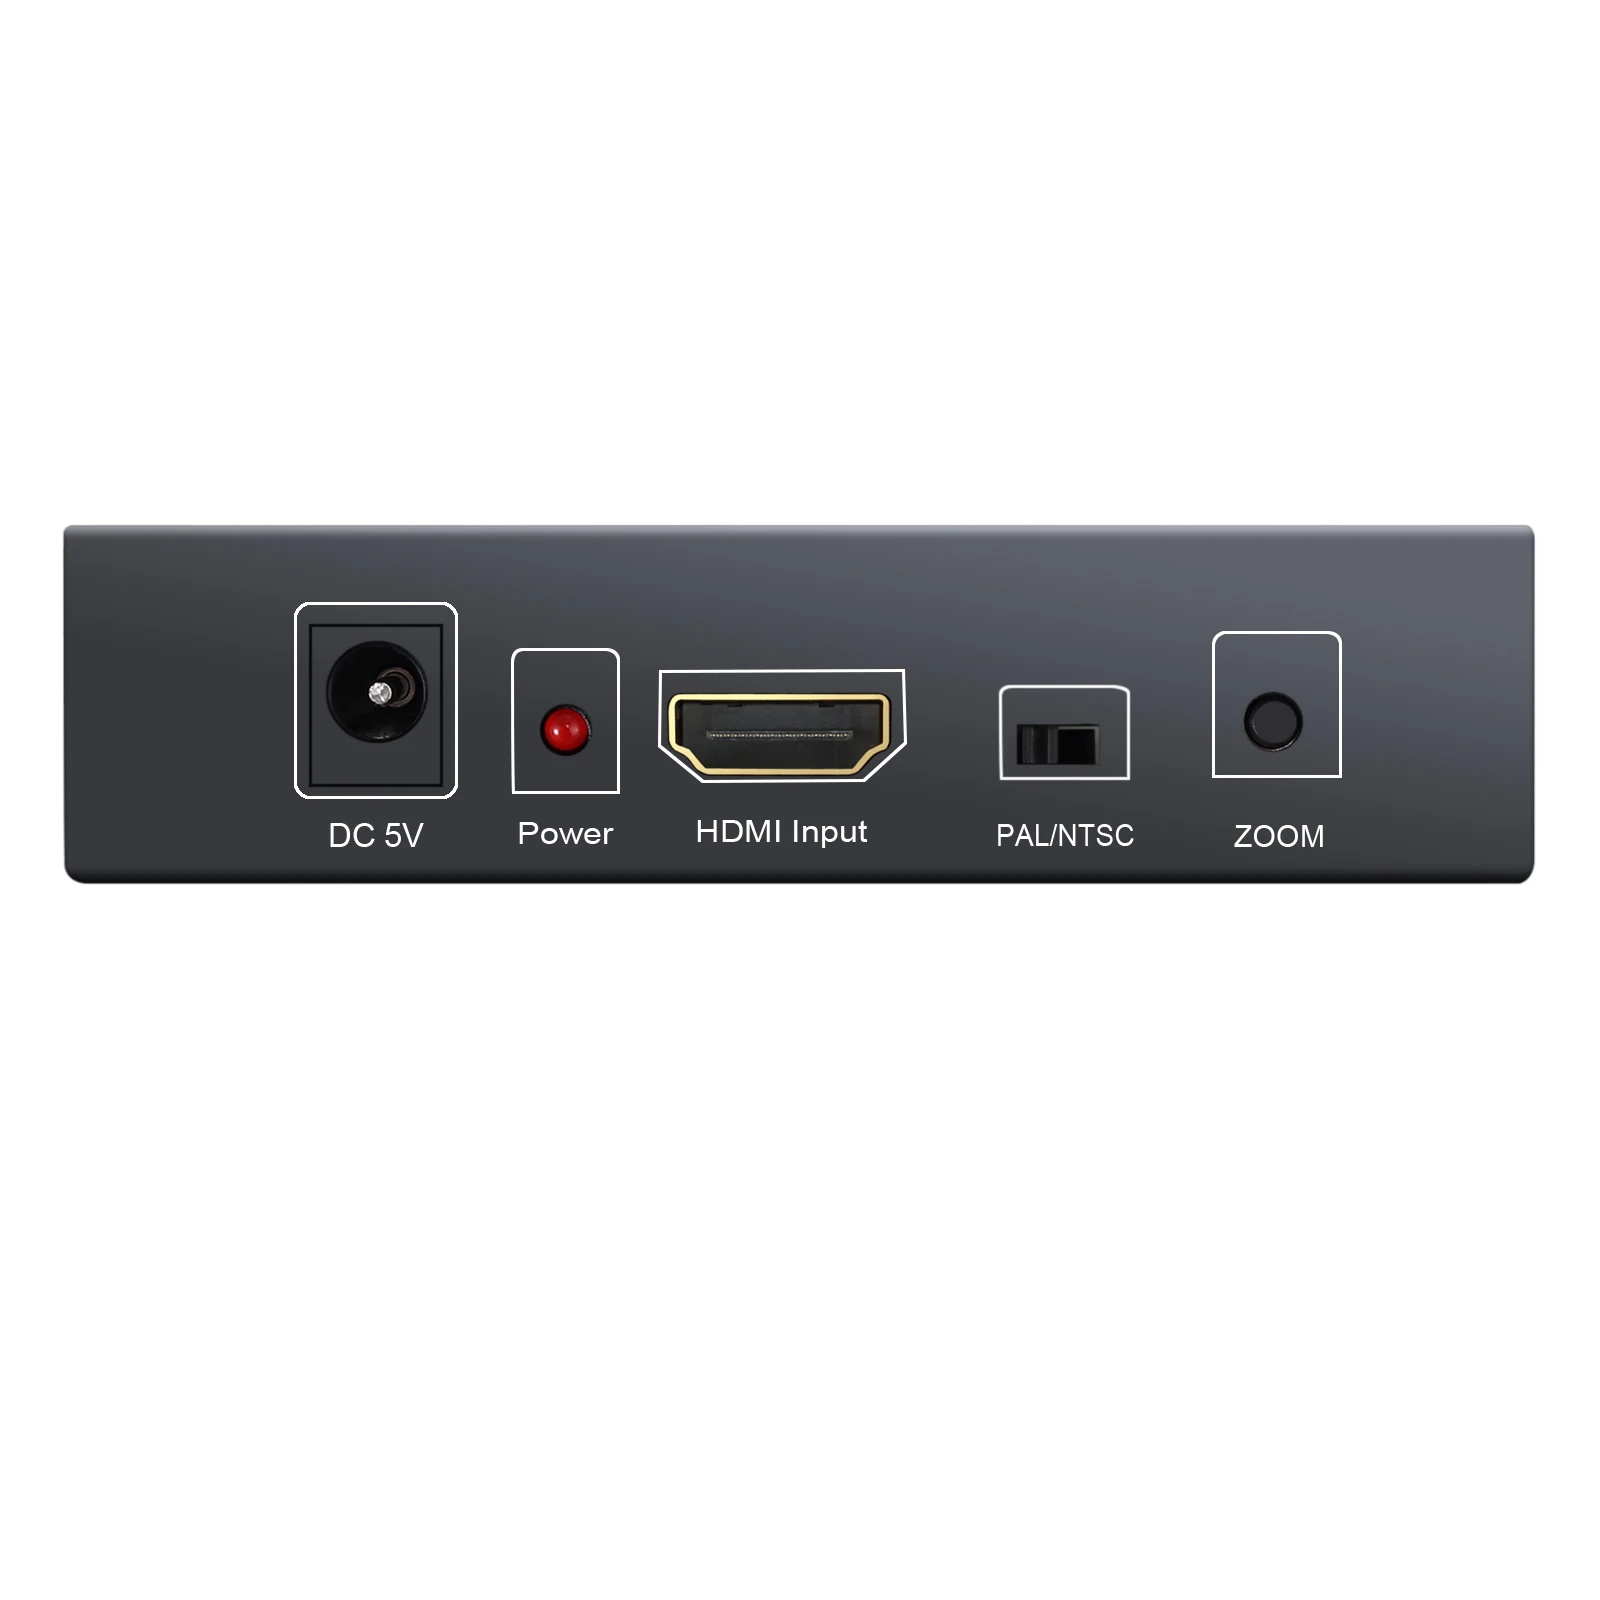 LiNKFOR HDMI SCART HDMI Vaizdo Garso Keitiklis Su 3,5 mm Ausinių Sąsaja Remti 1080P PAL NTSC HDTV SCART Adapteris